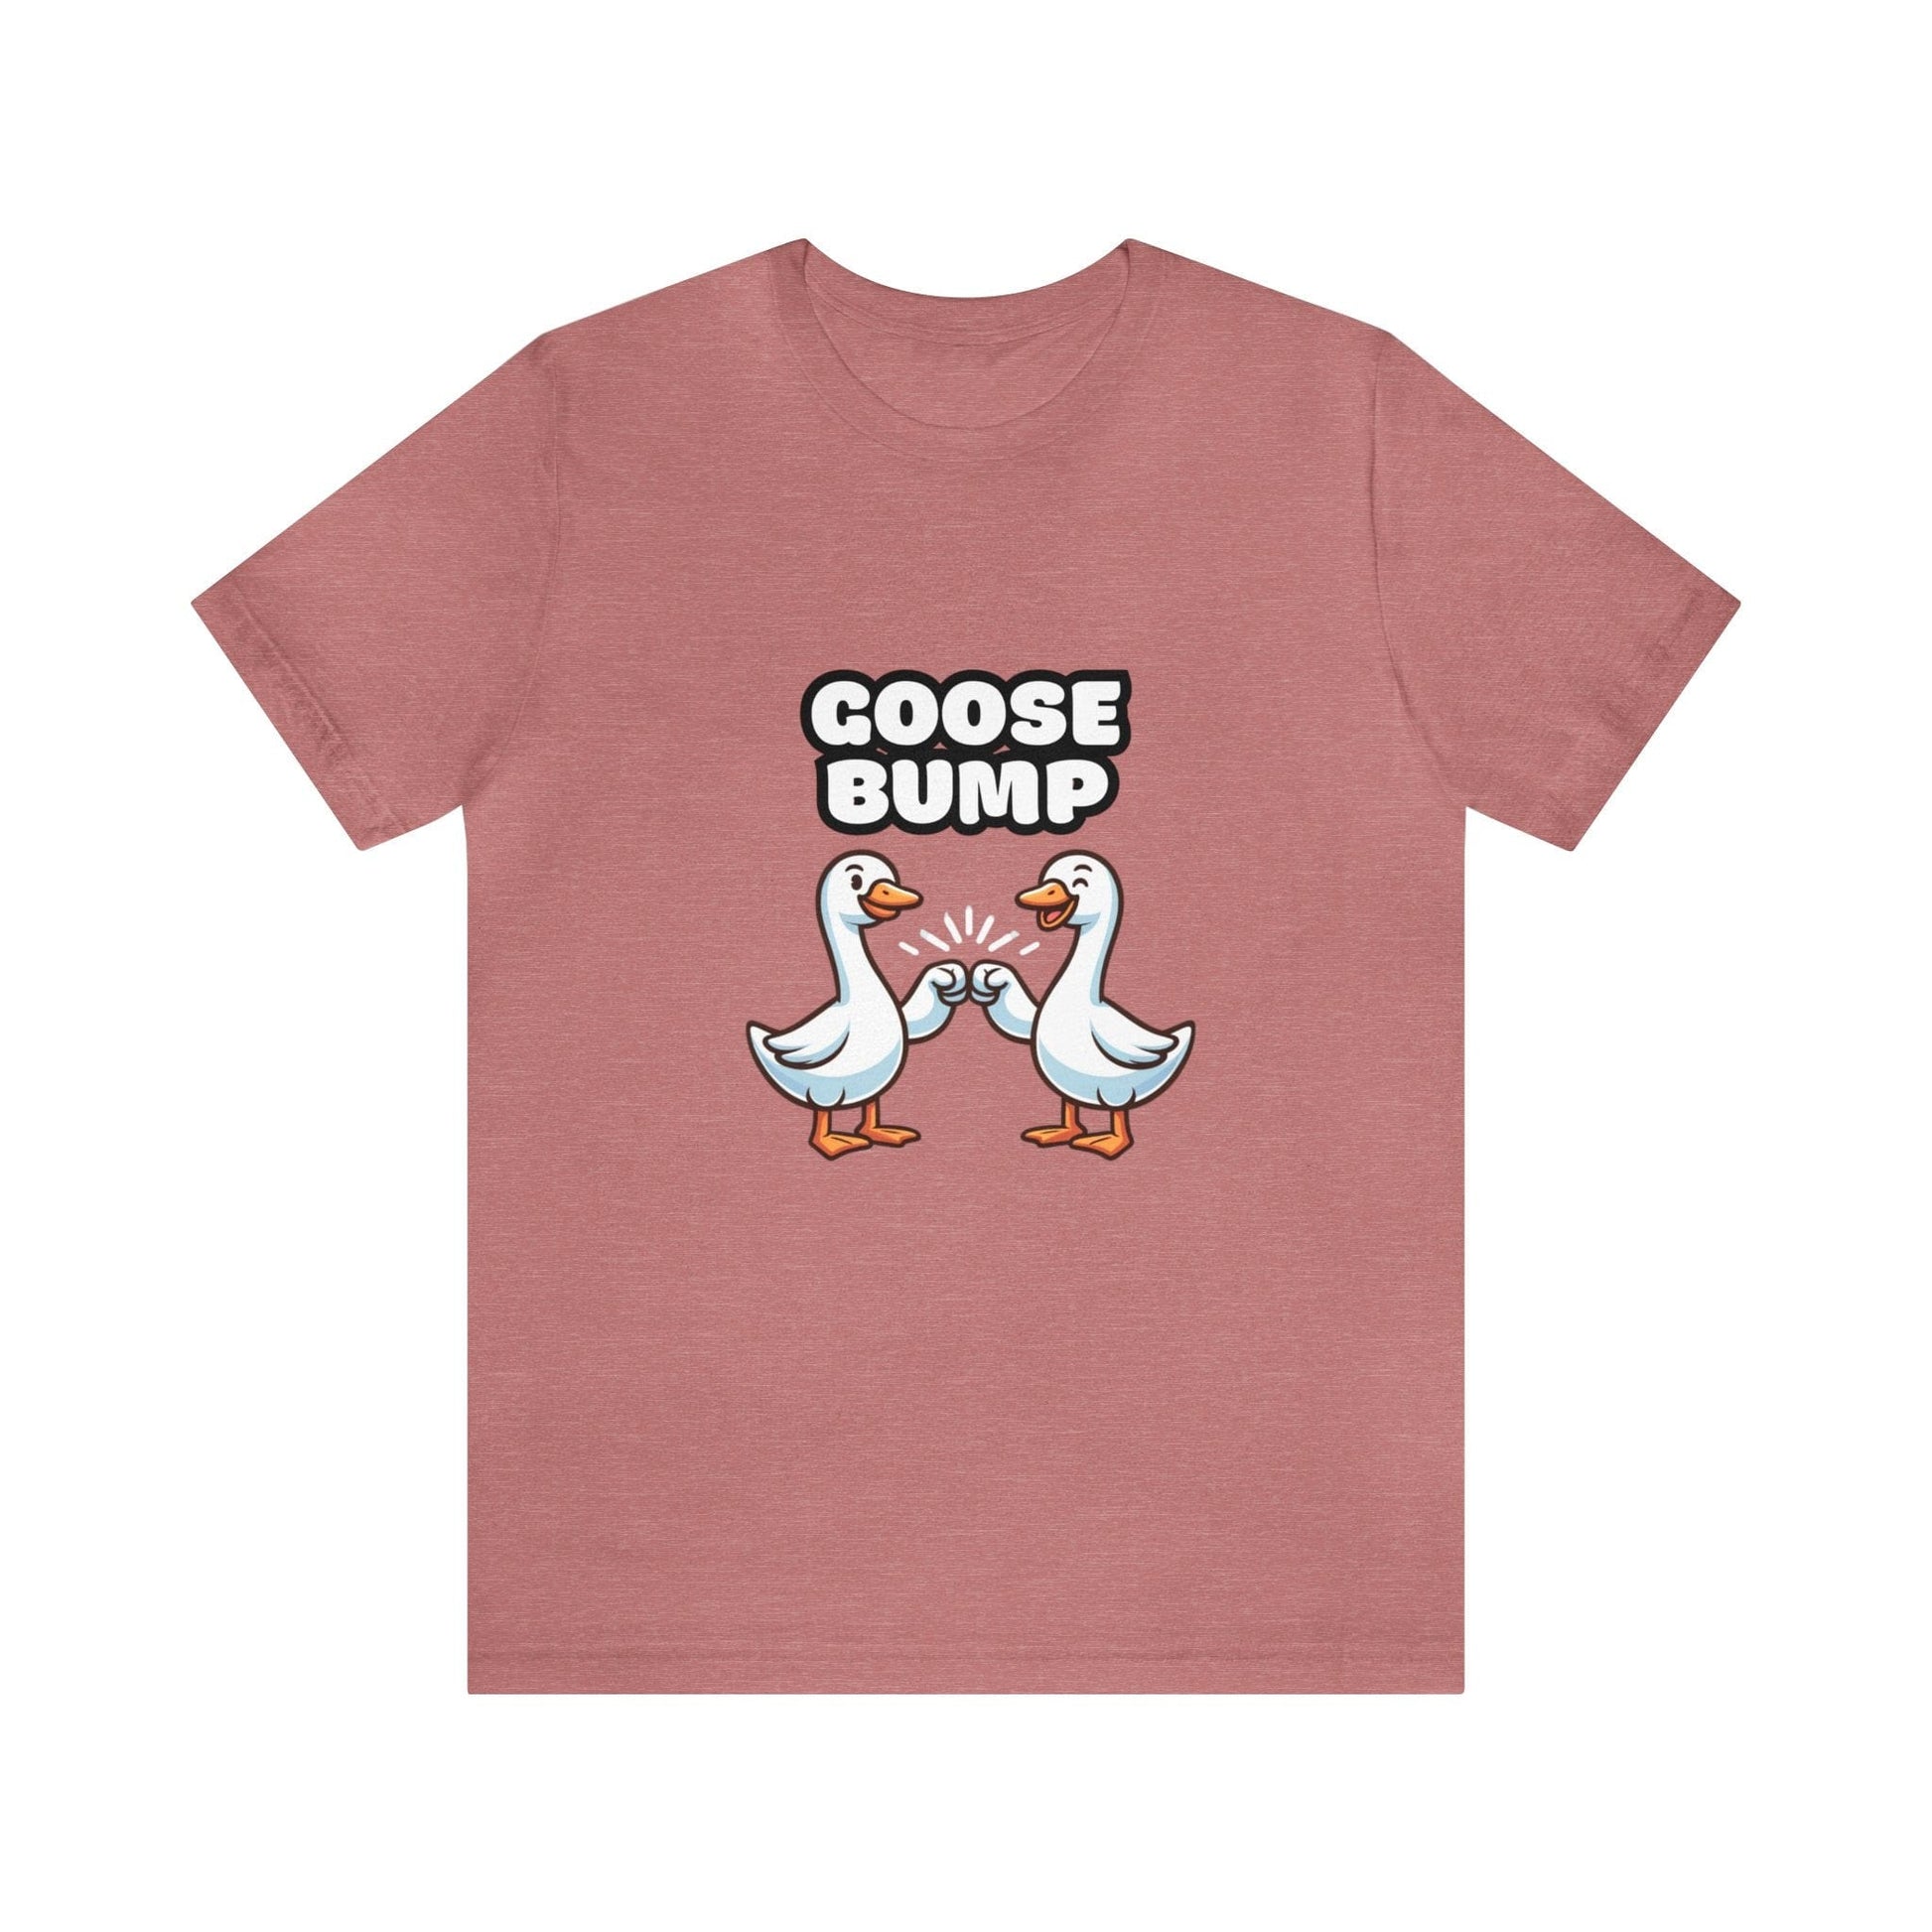 US - Goose Bump - Goose T-shirt Heather Mauve / S